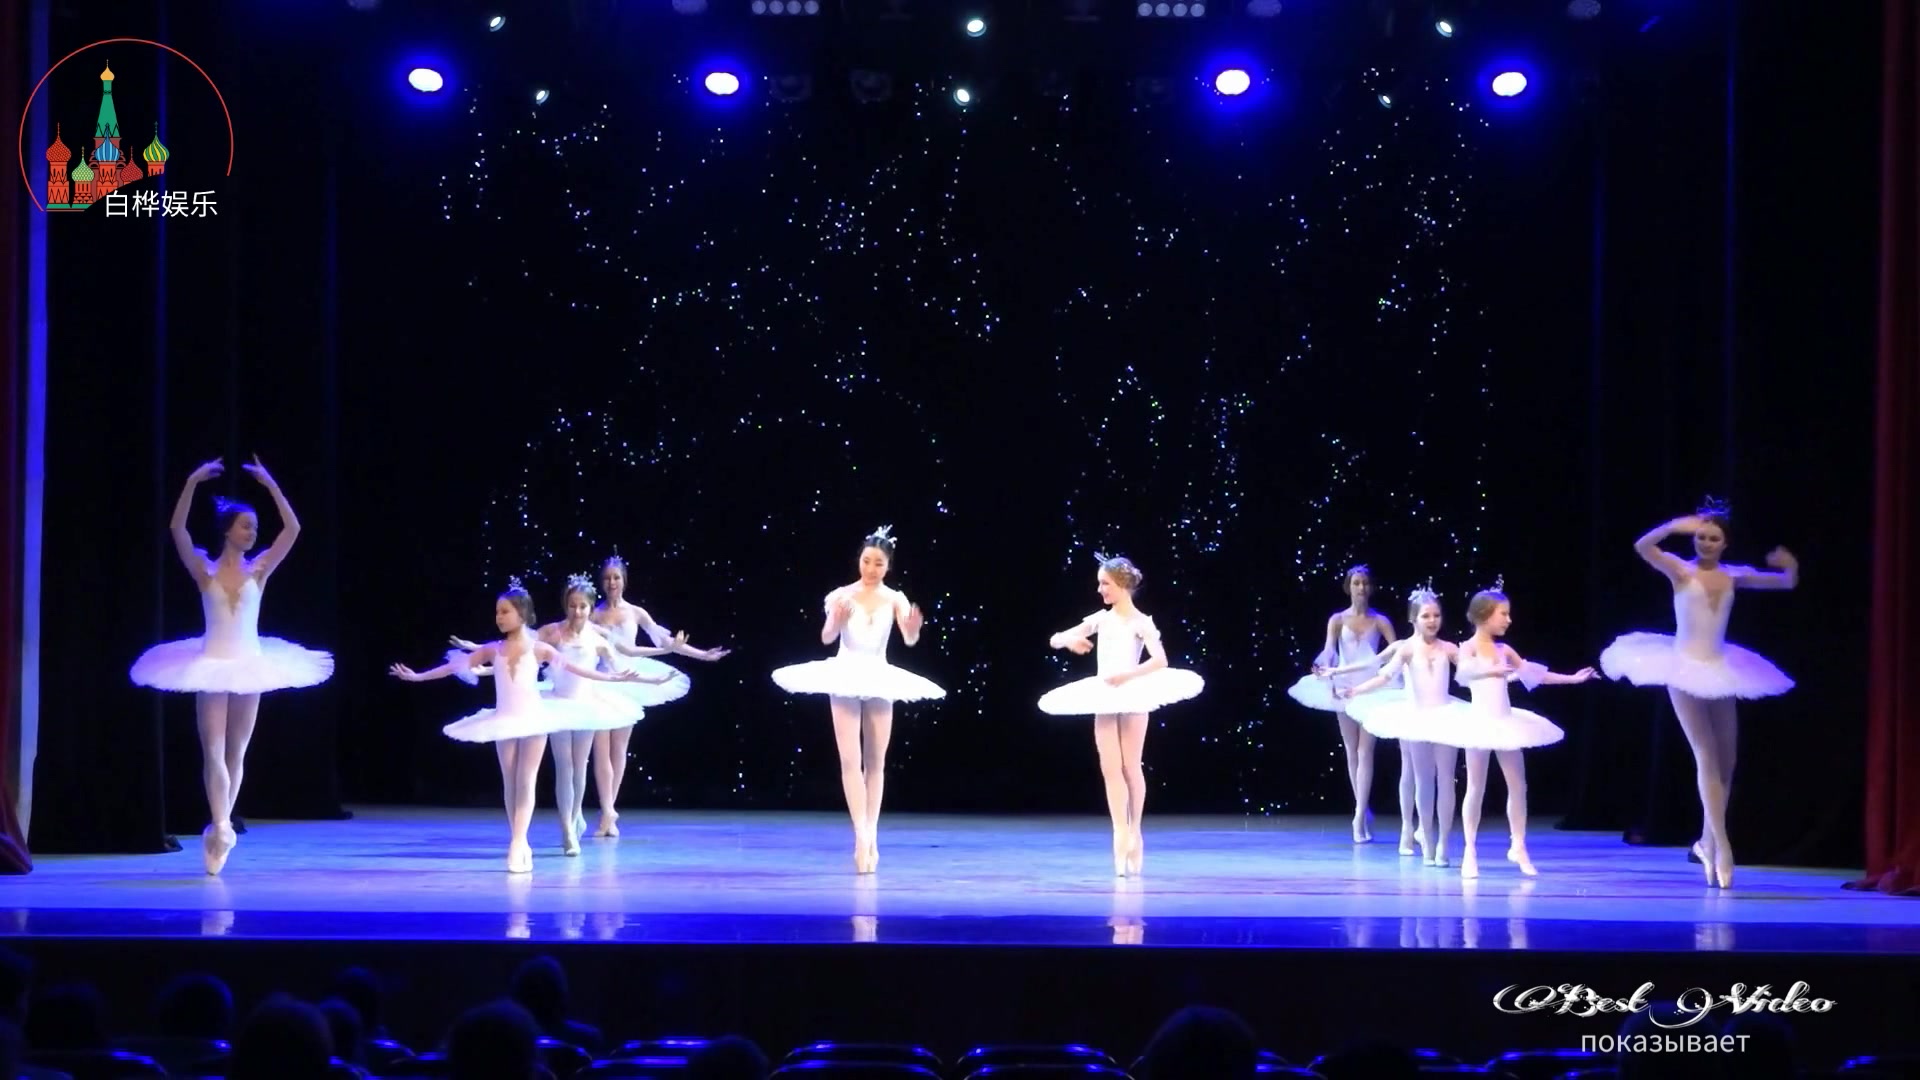 梦幻的芭蕾舞表演,女孩们的身姿太美了